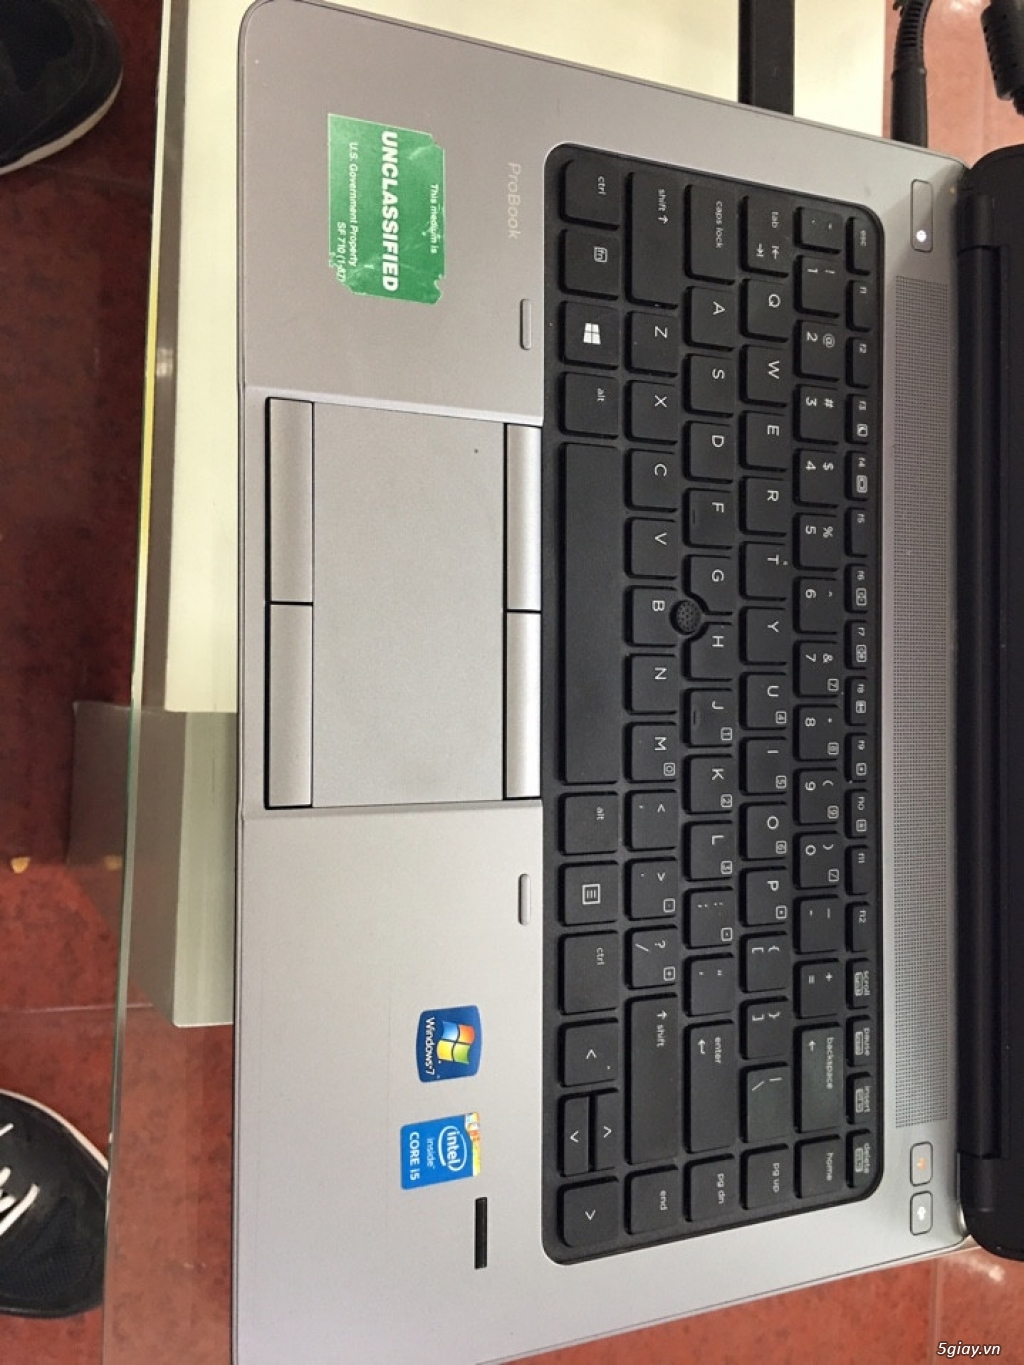 HP ProBook 640 G1 Core i5 2.6Ghz, 8GB Ram xách tay từ Mỹ  giá rẻ - 2